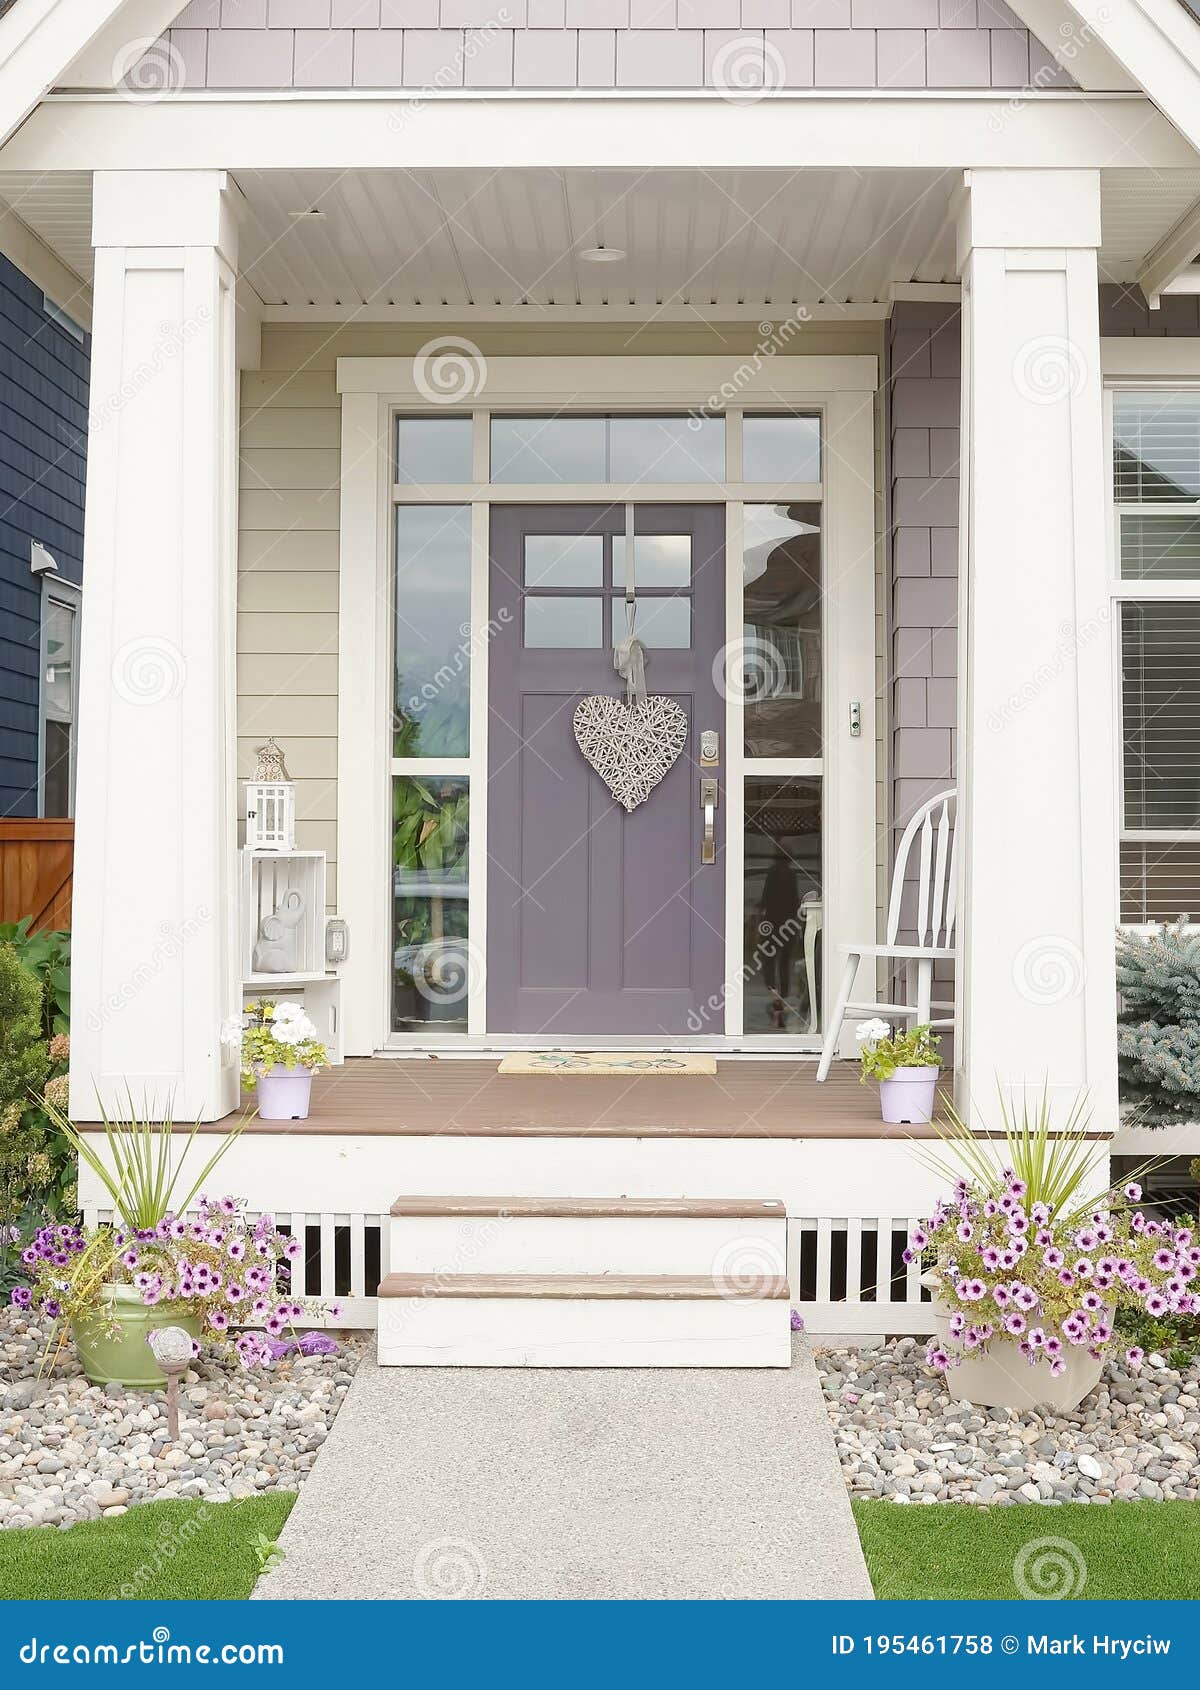 Home House Front Door Design Lavender Paint Exterior Front Porch ...